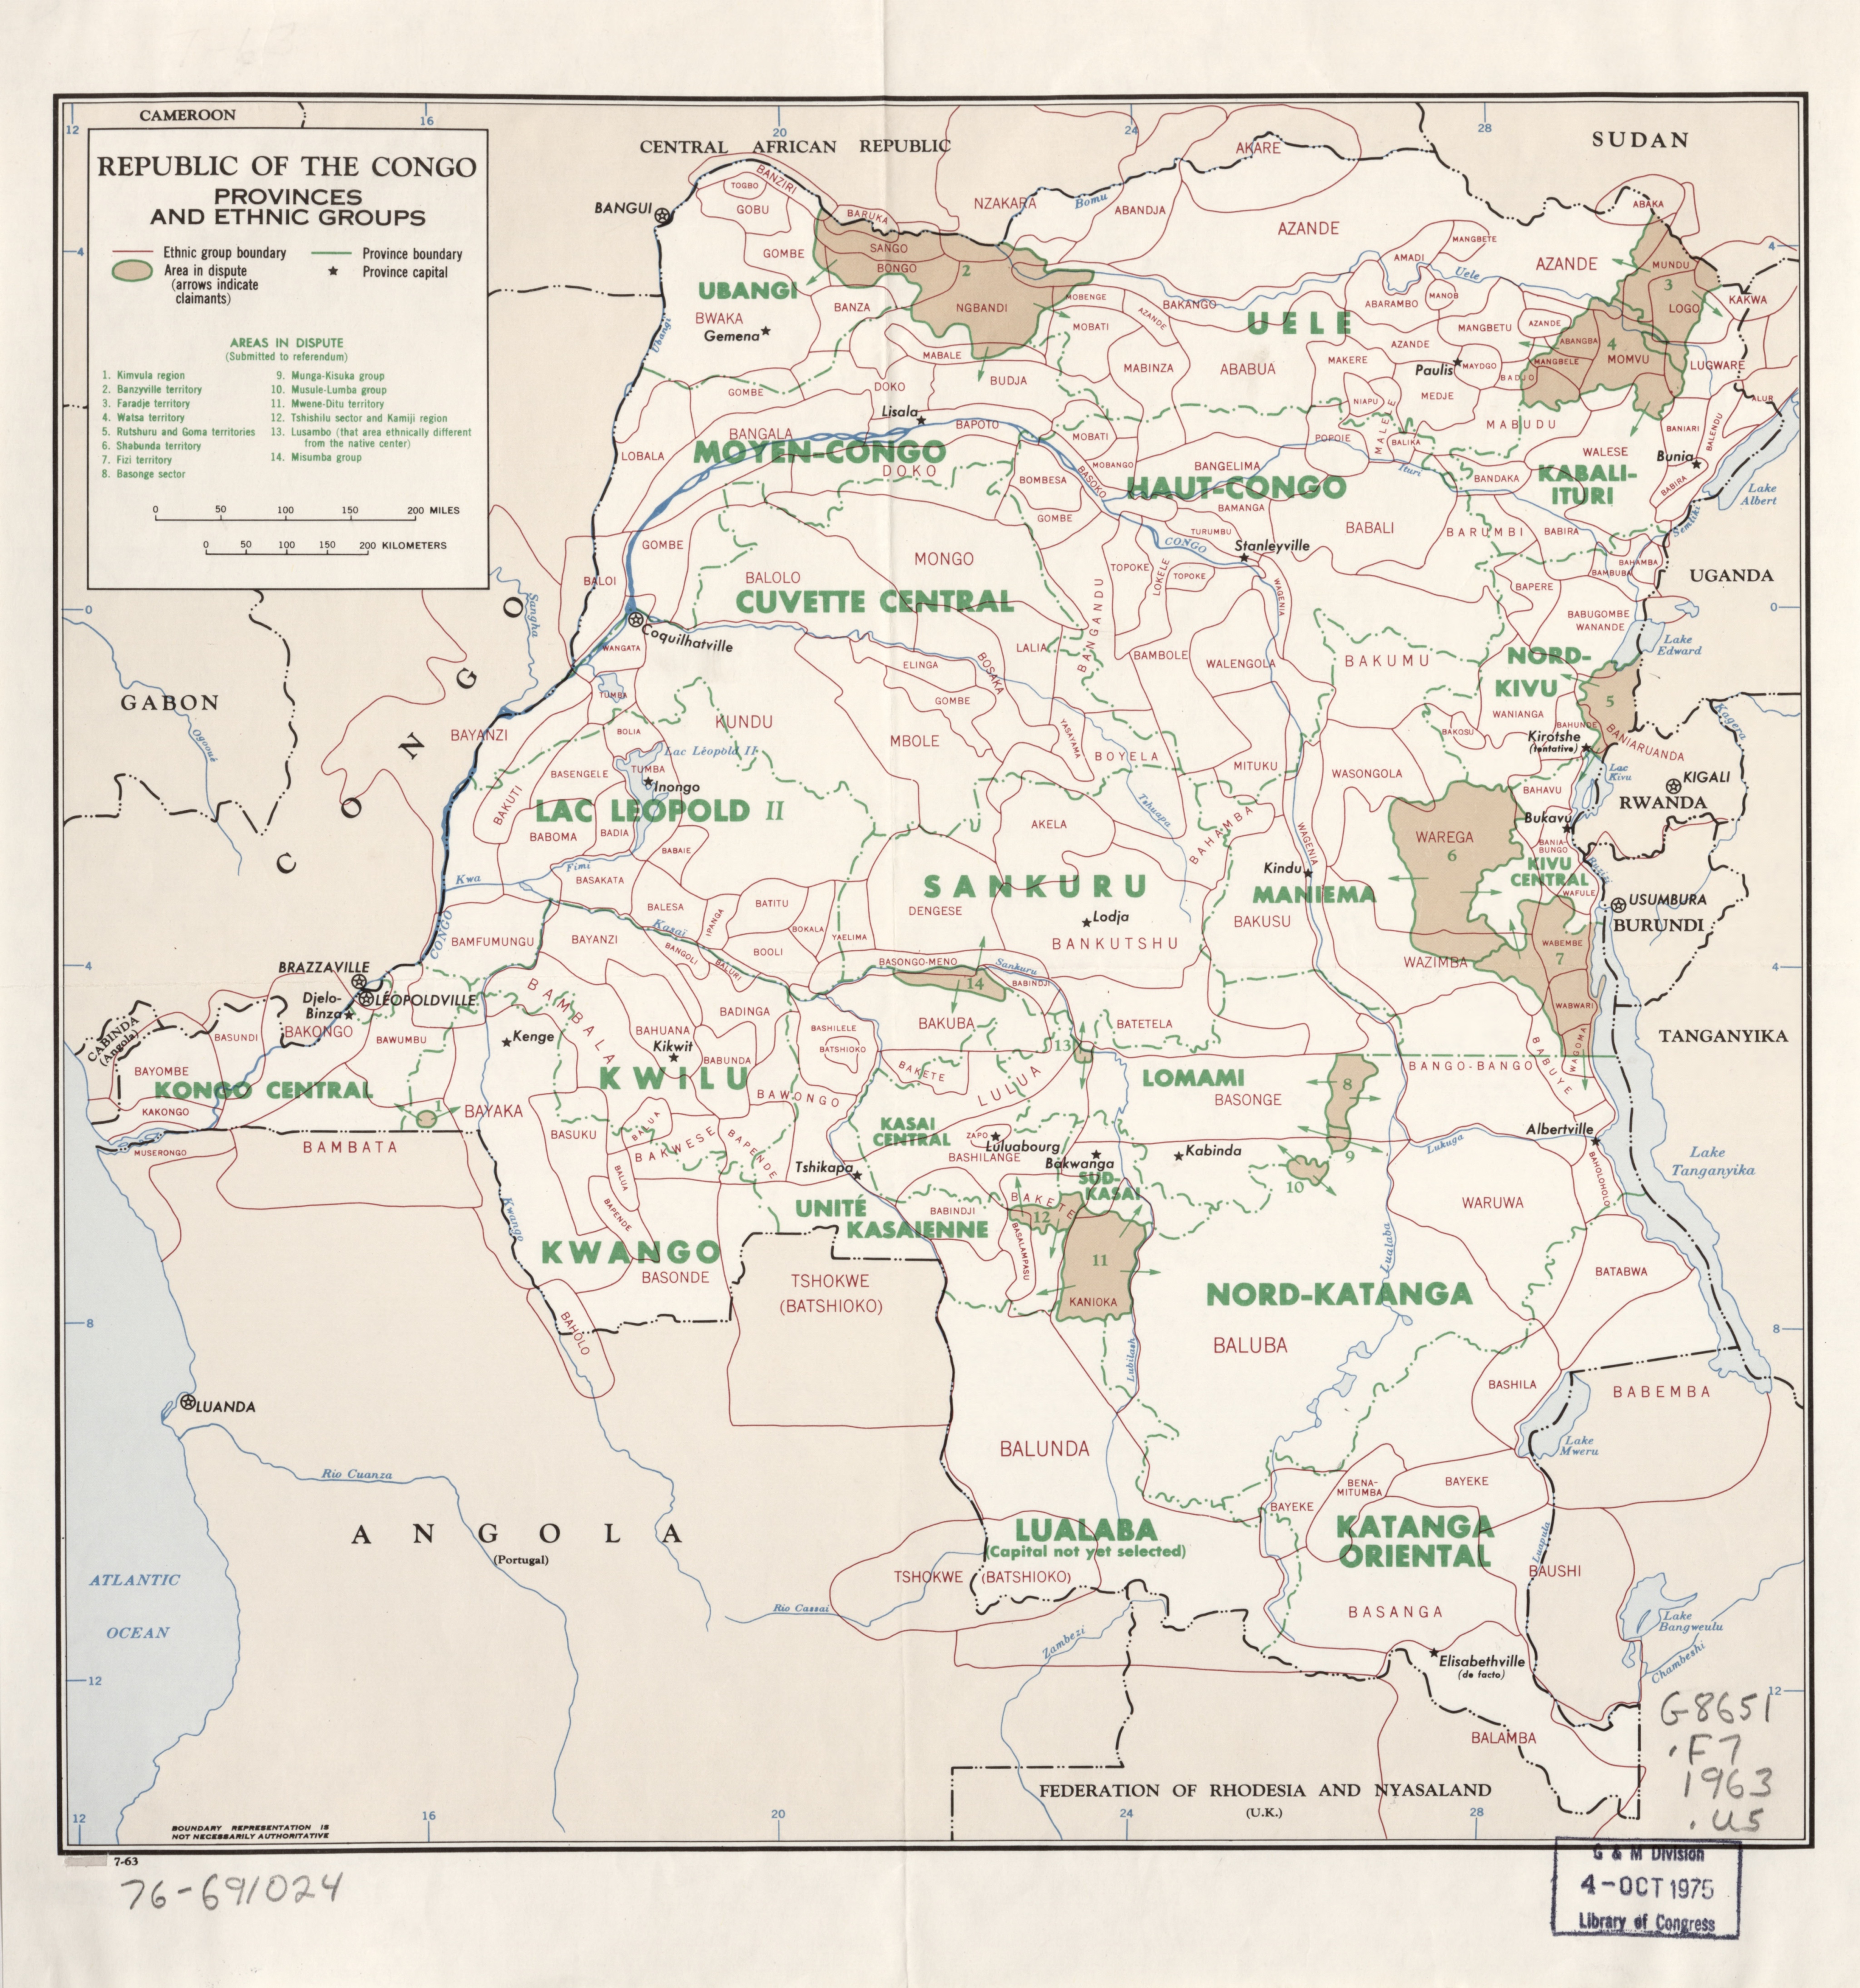 Carte de provinces et groupes ethniques de la RD Congo en 1963